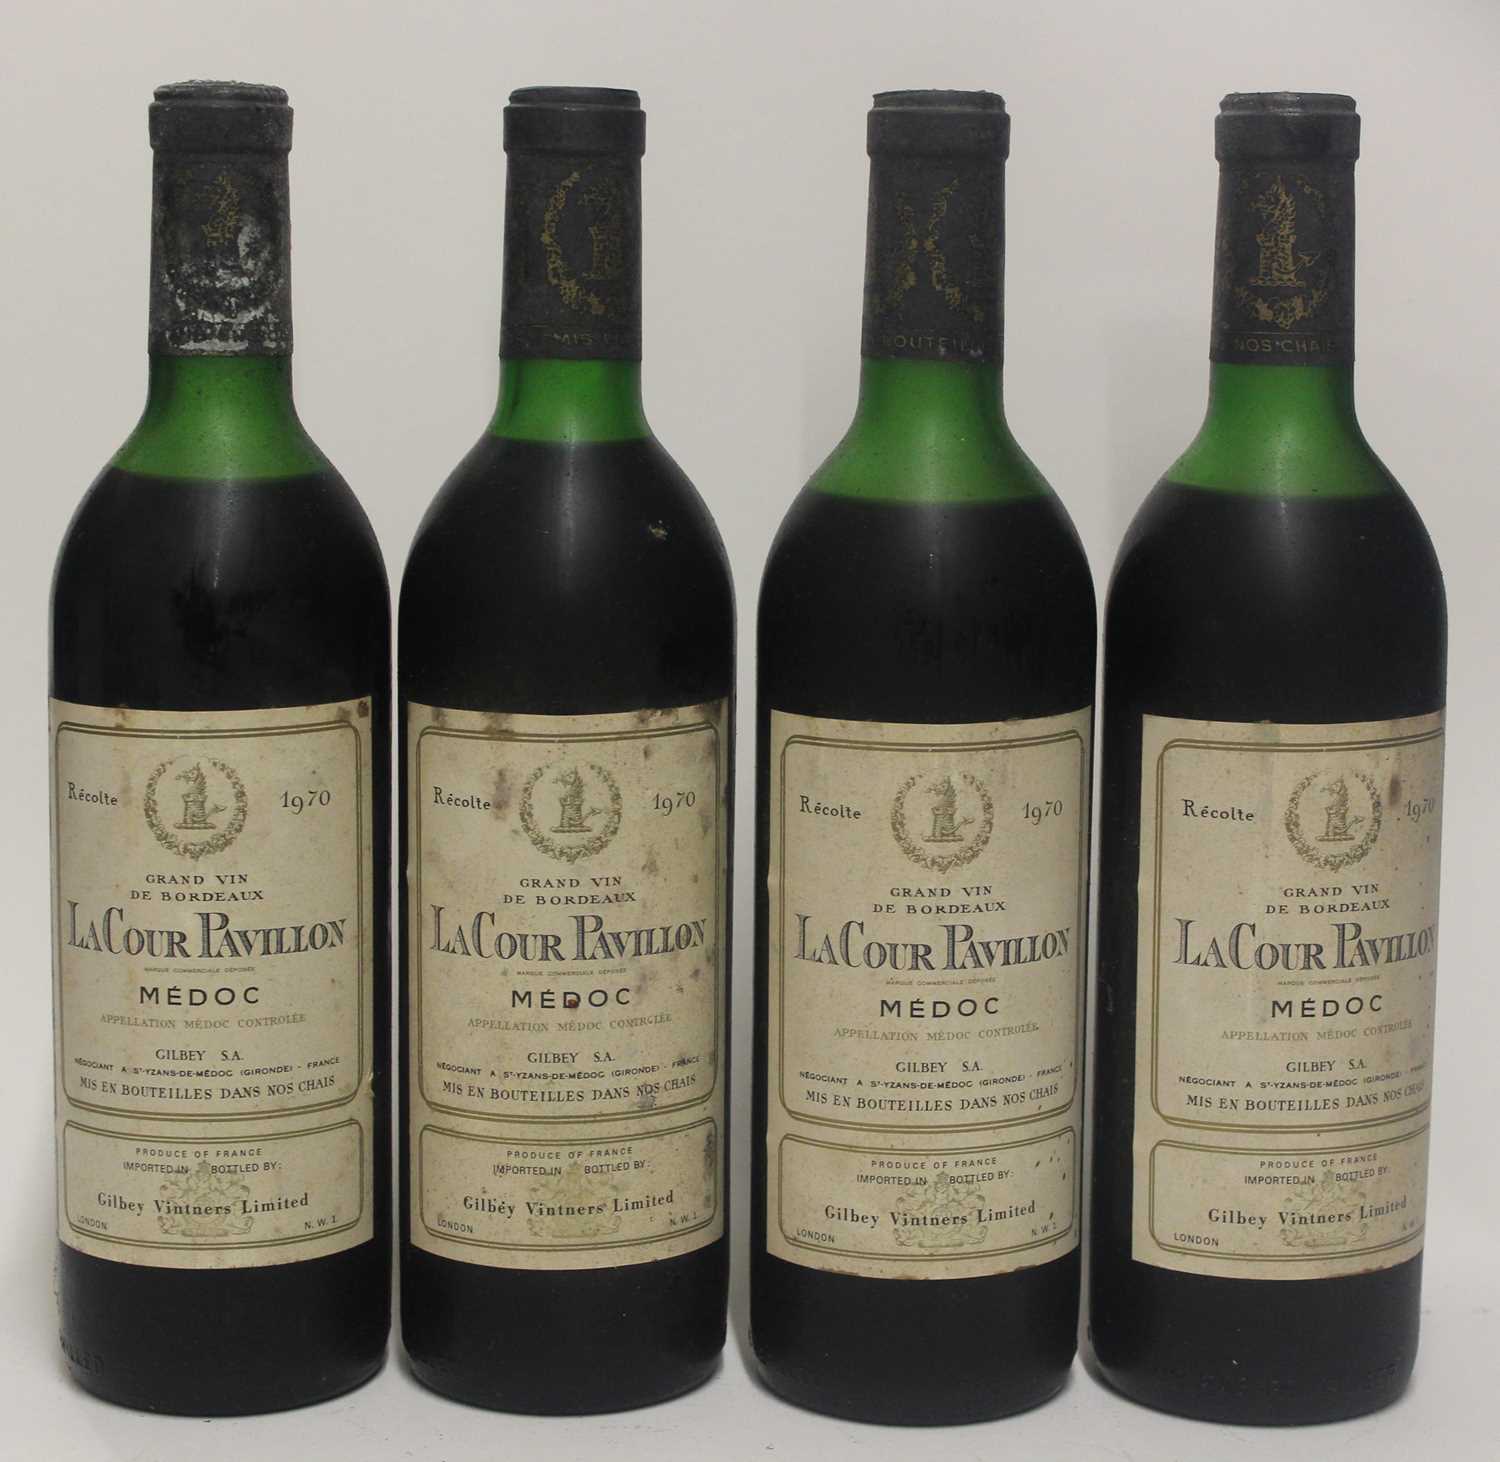 Lot 1045 - LaCour Pavillon, 1970, Medoc, four bottles